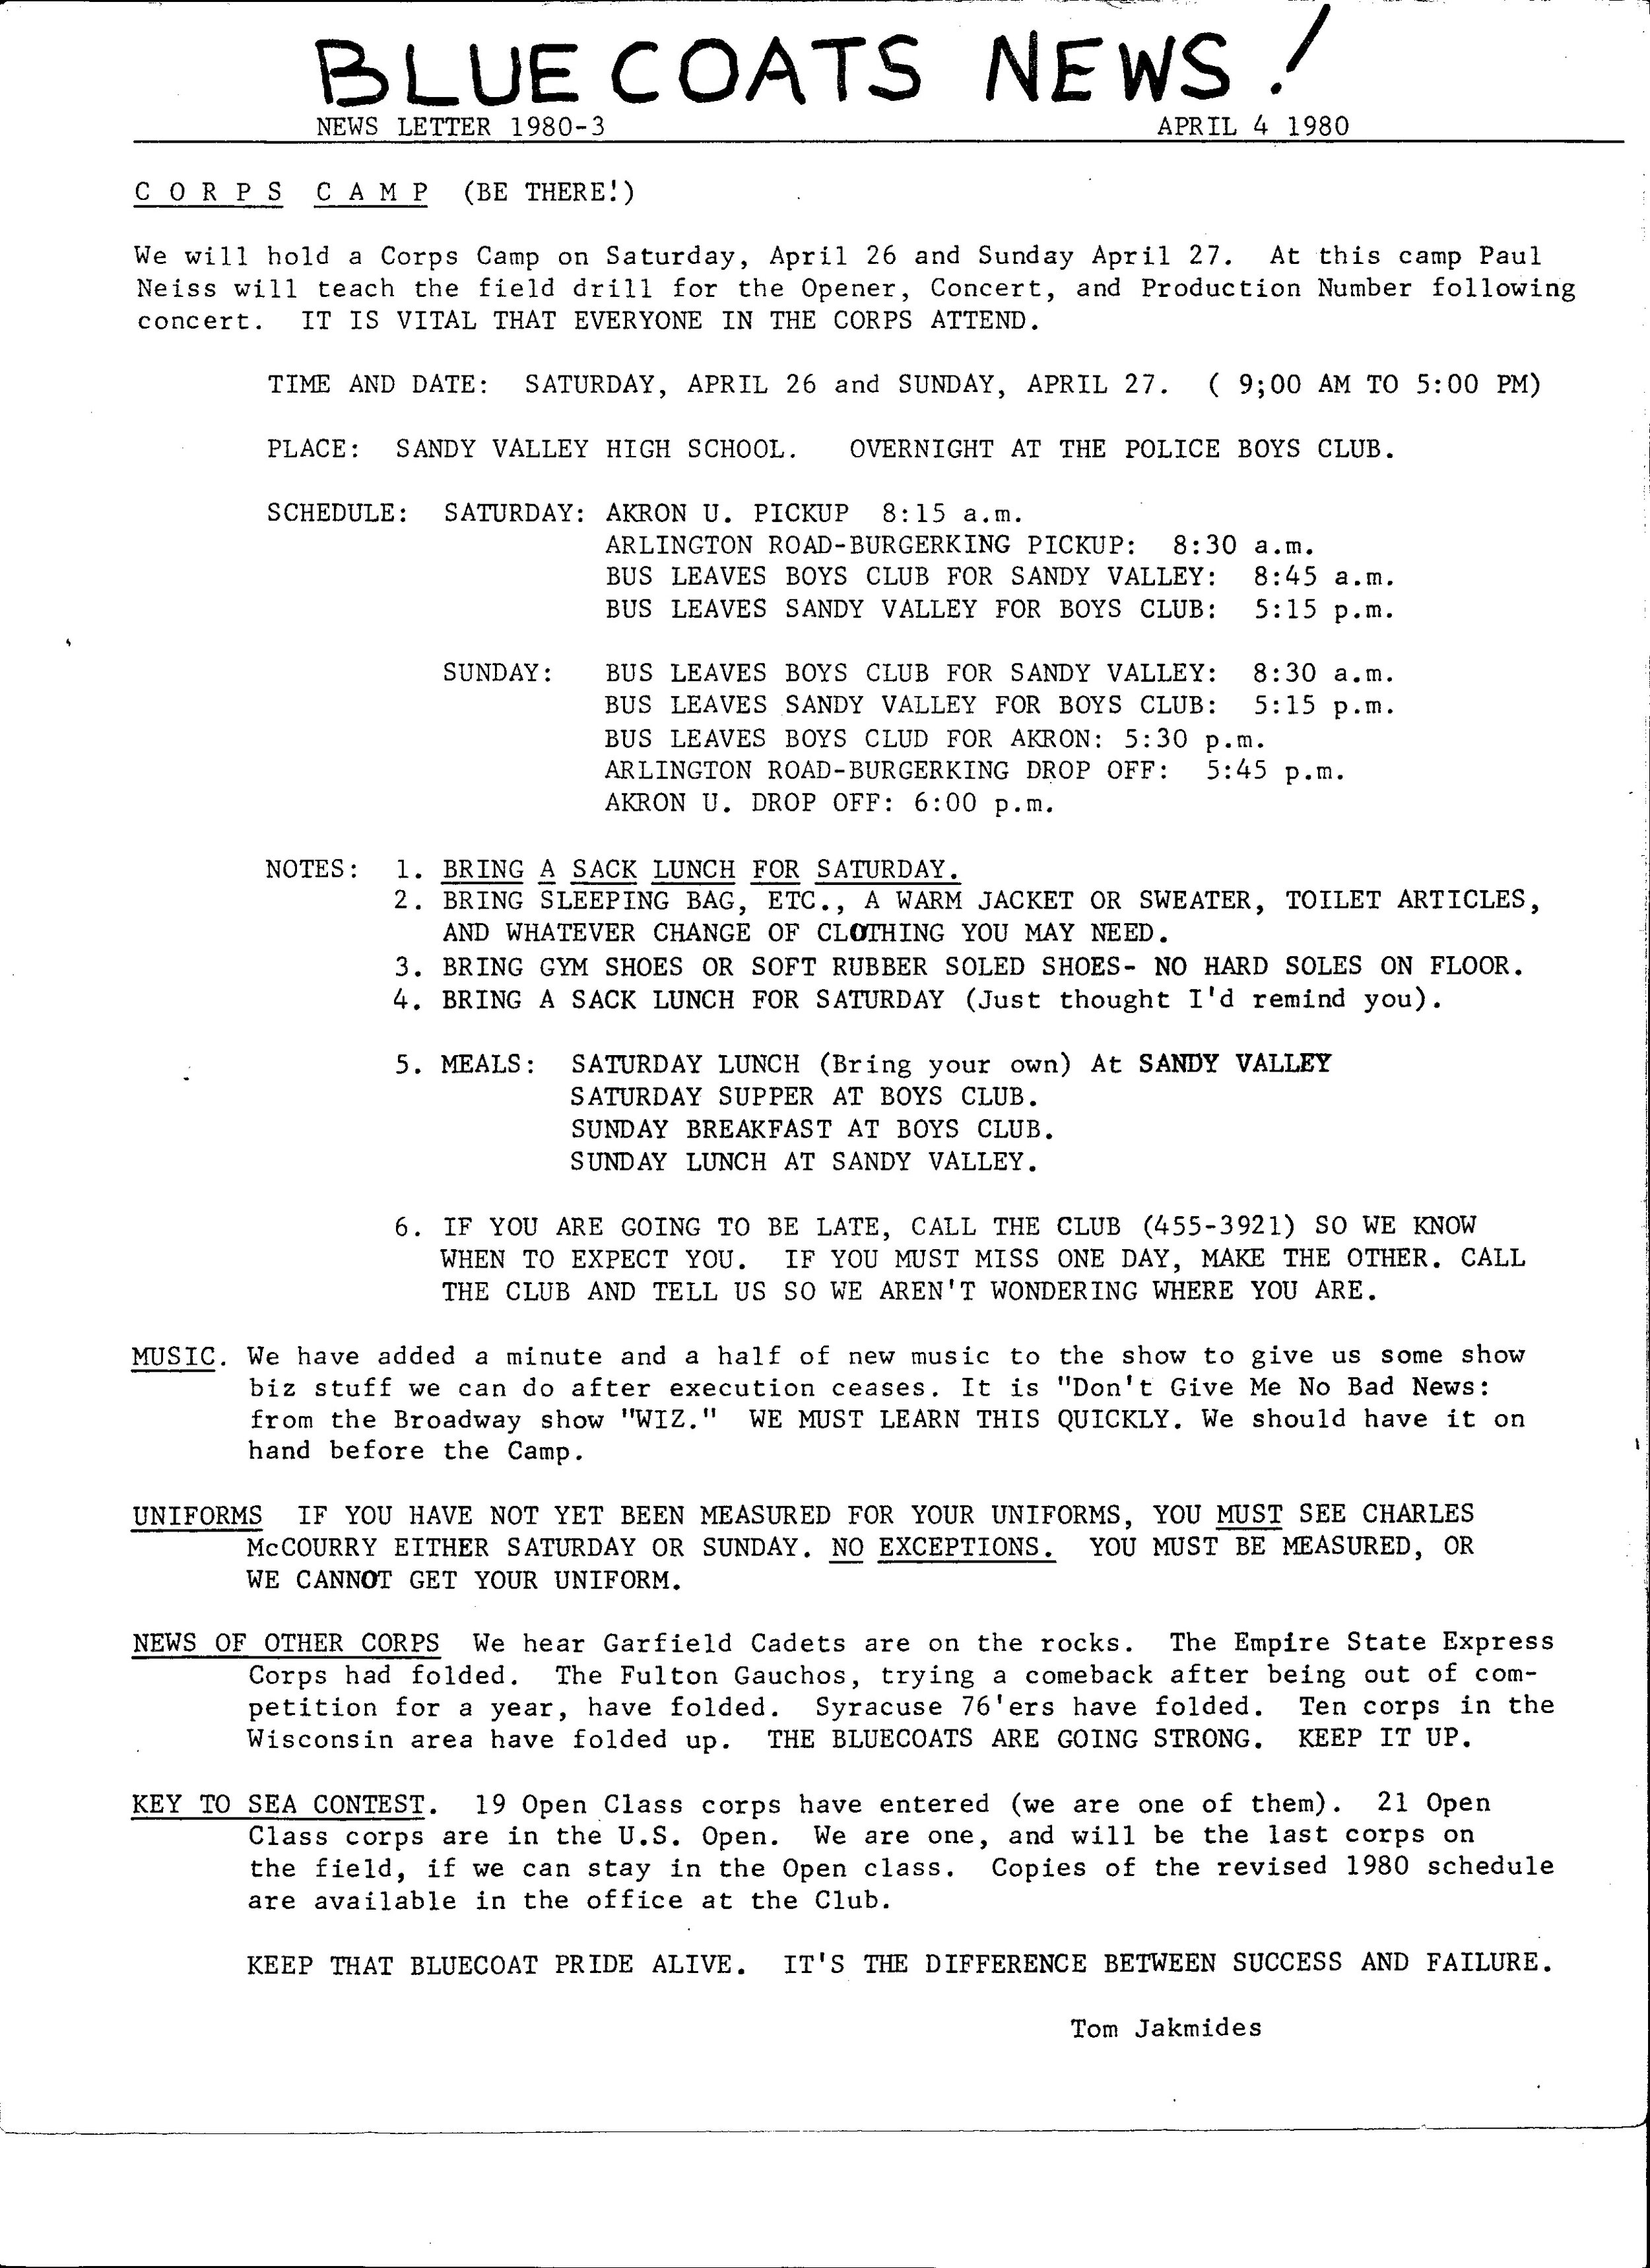 1980 April 4 Bluecoats News - kowal.jpg